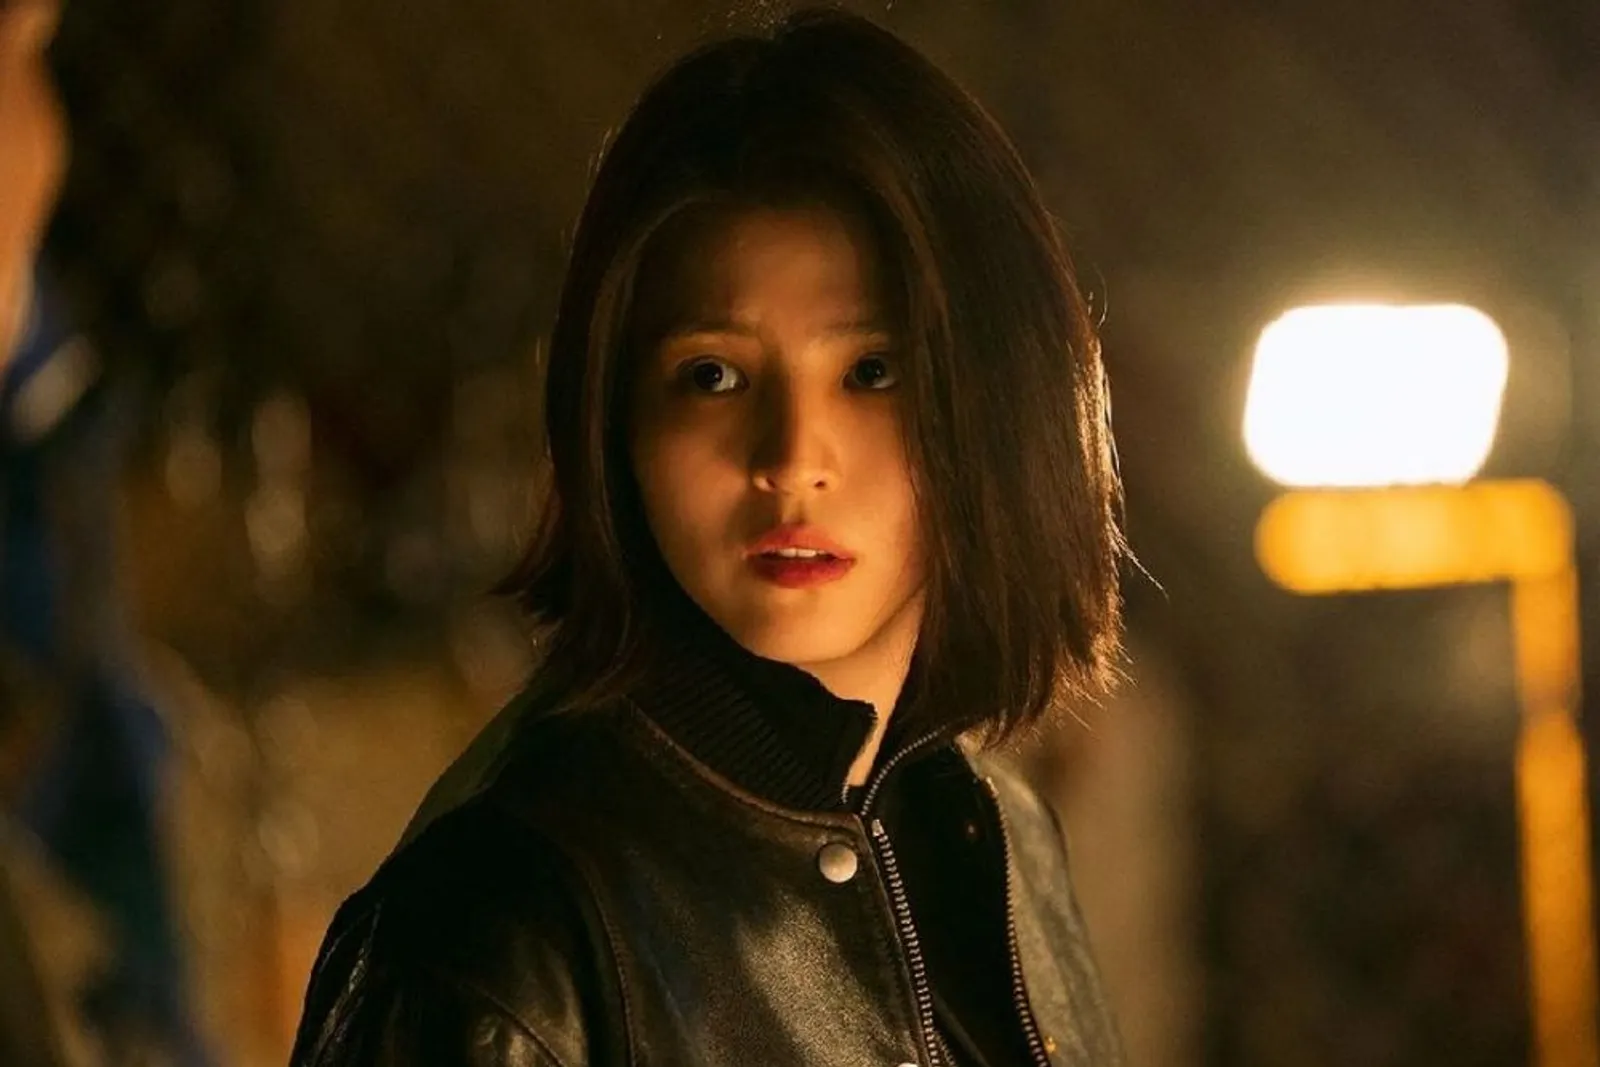 Debut Hingga Drama Terbaru, Begini Transformasi Han So Hee